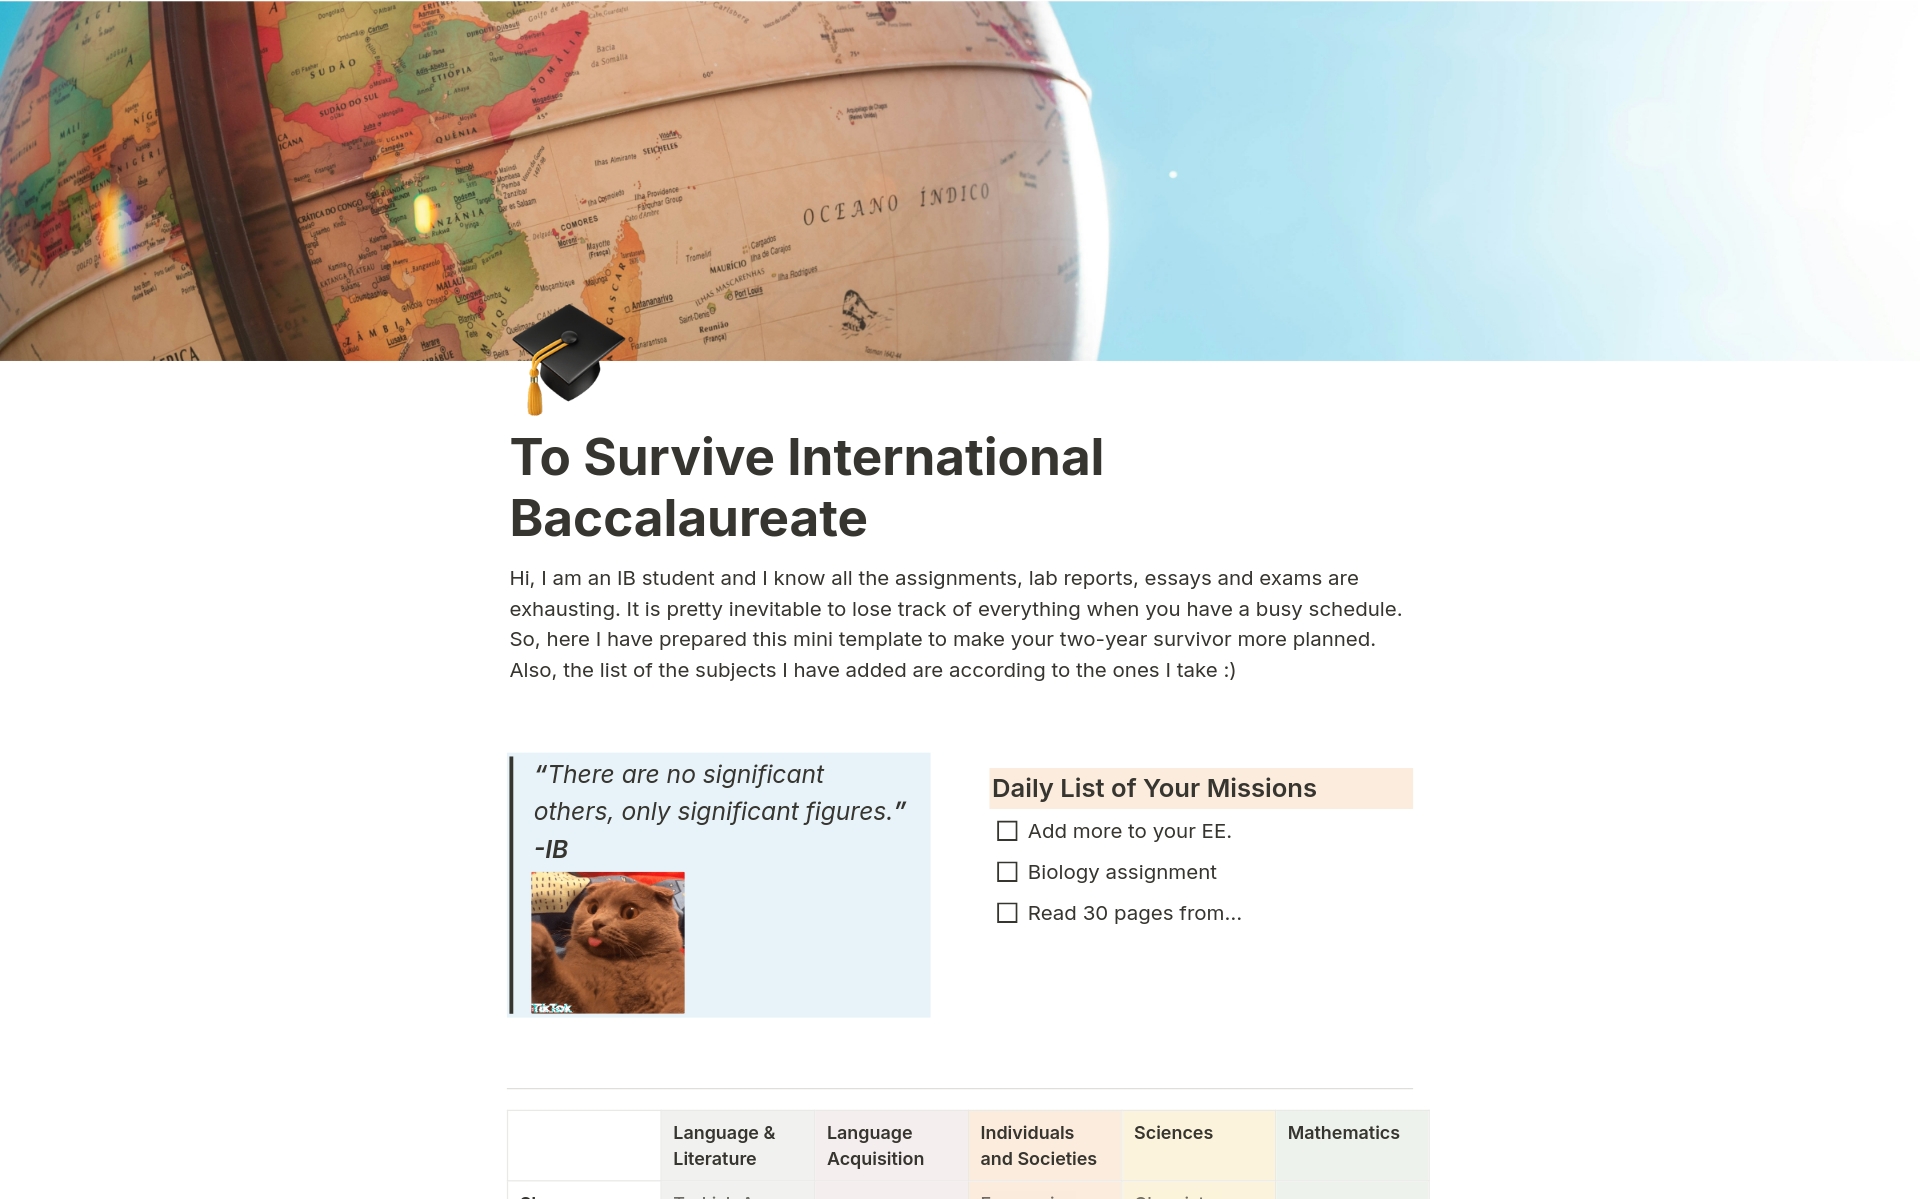 En förhandsgranskning av mallen för To Survive International Baccalaureate